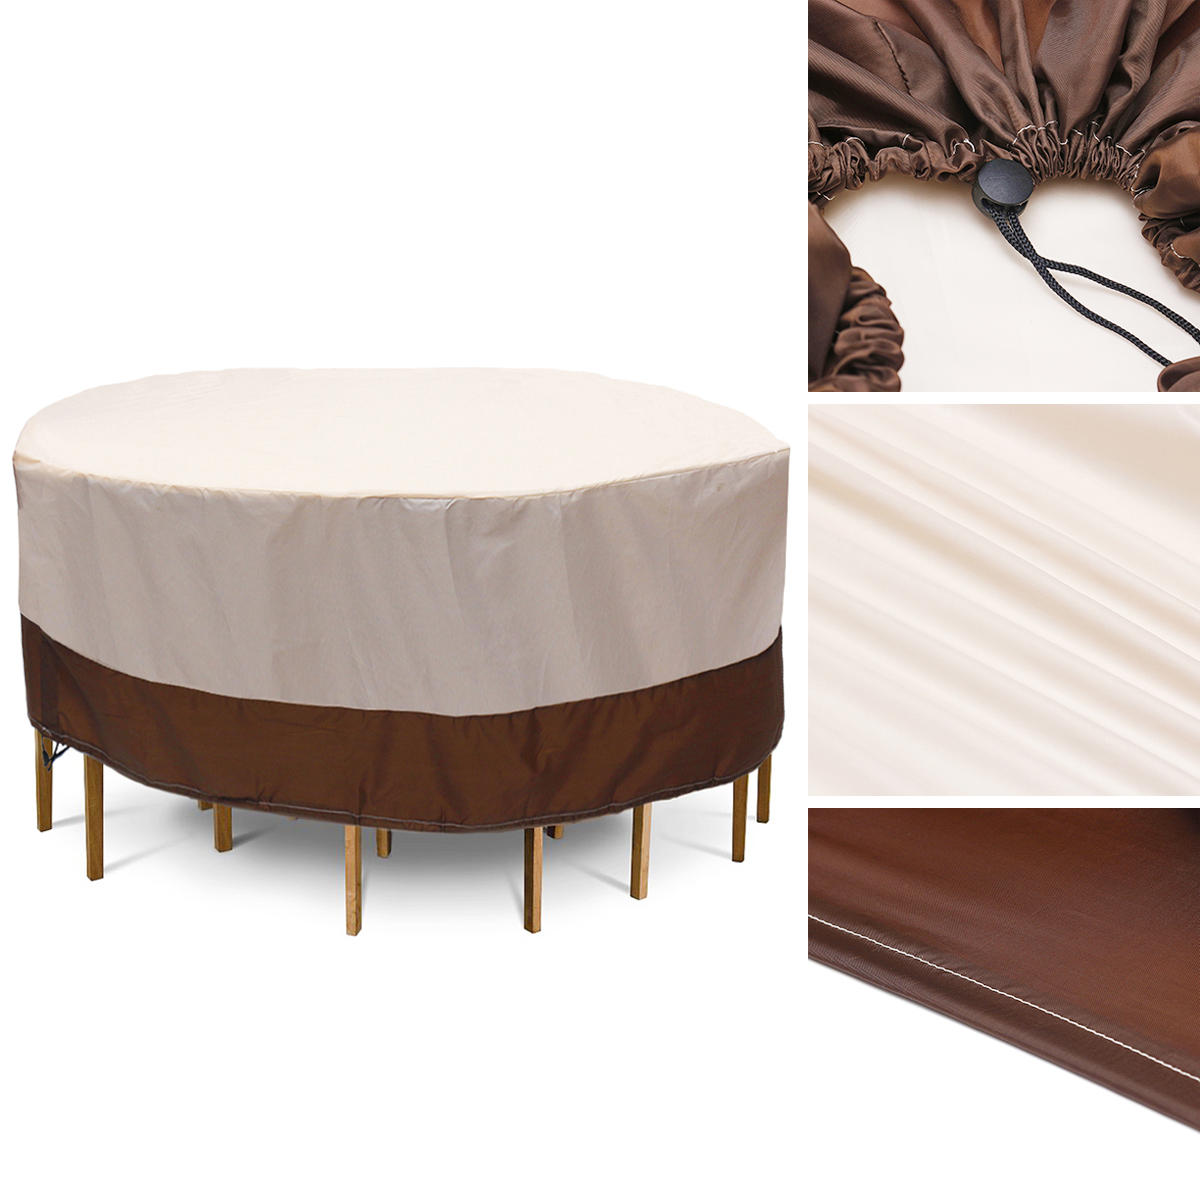 Водонепроницаемы Мебель для патио с круглой крышкой На открытом воздухе Настольные стулья Bench Sofa Rain Dust Protector